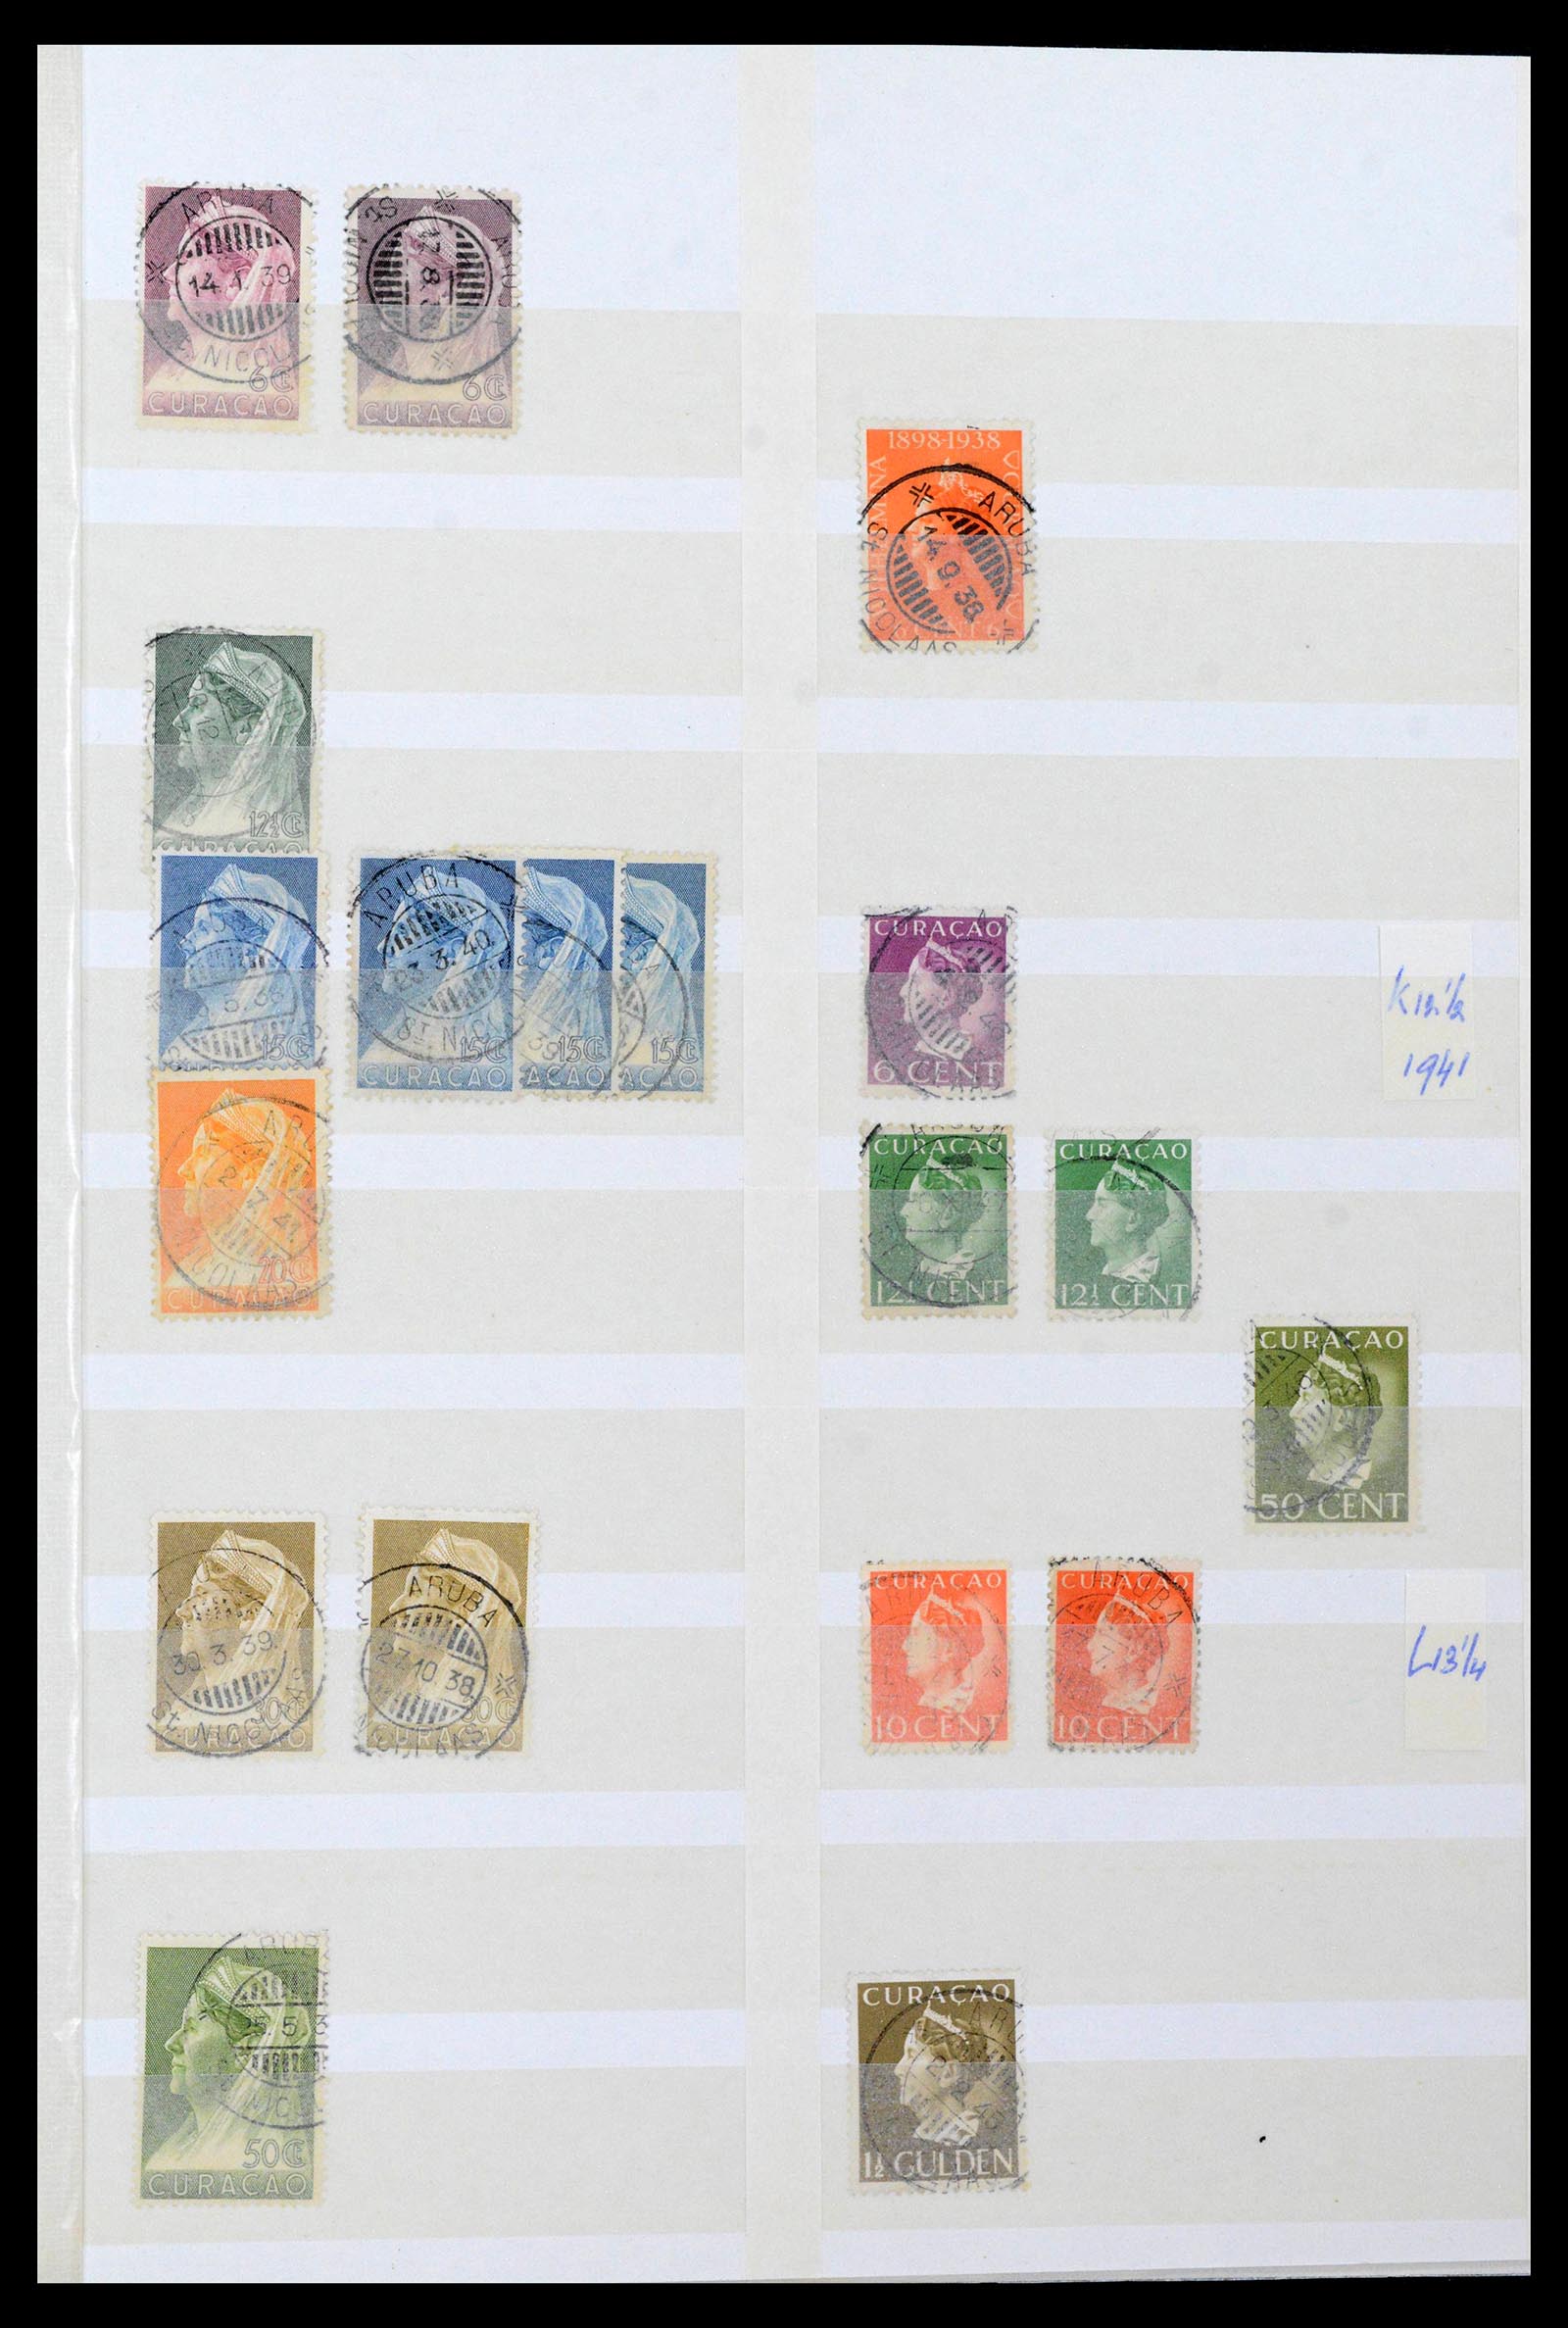 39541 0012 - Postzegelverzameling 39541 Curaçao/Antillen stempels 1873-1970.